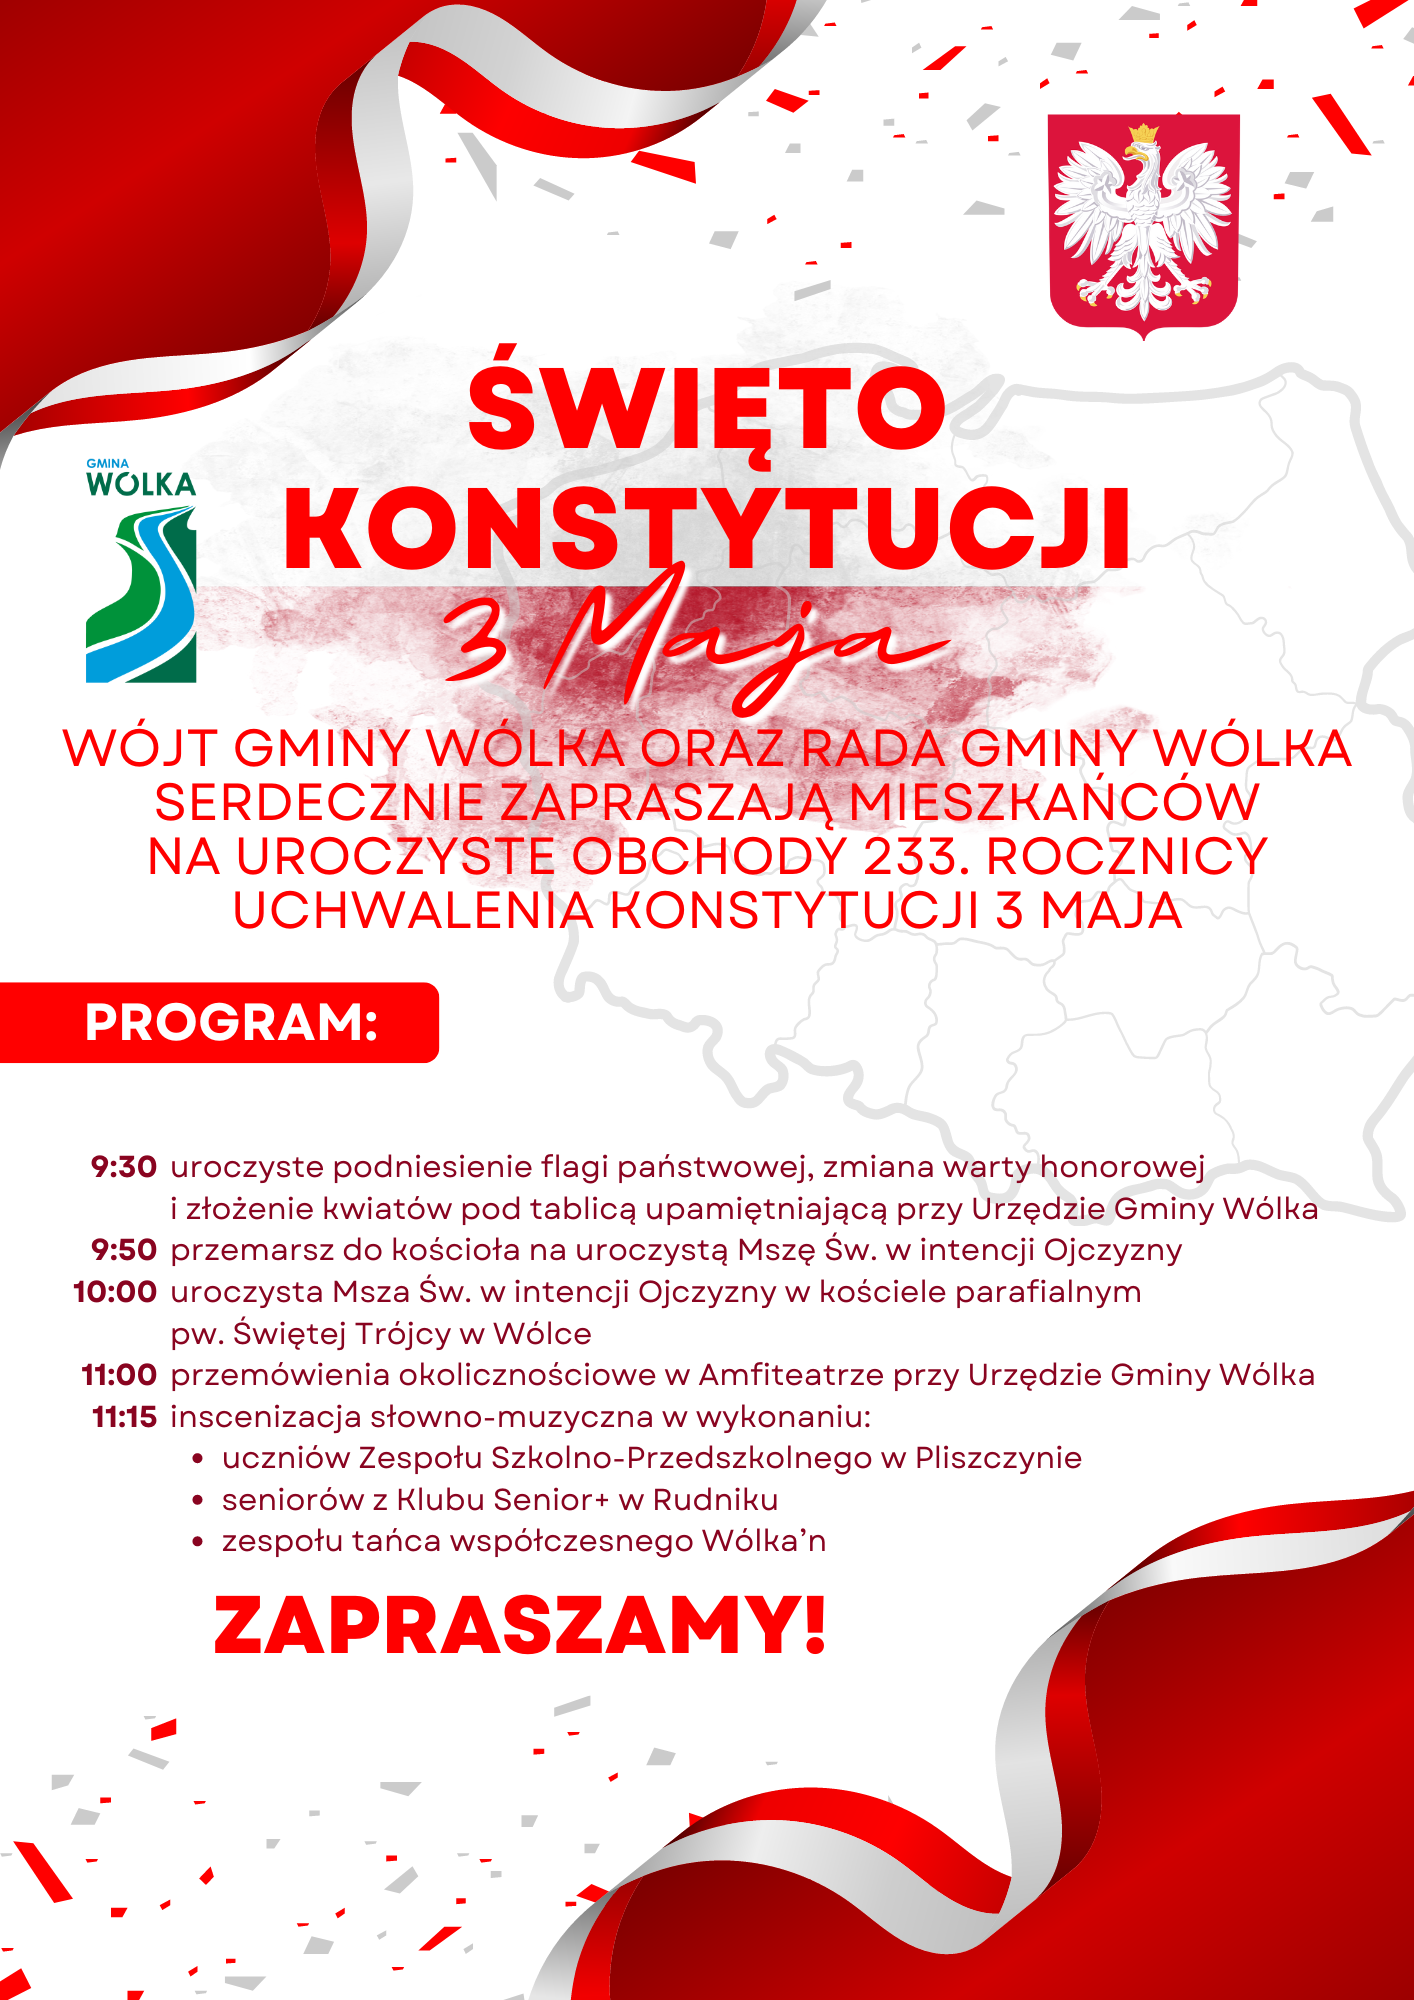 Plakat zapraszający na obchody Święta Konstytucji 3 Maja w gminie Wólka z harmonogramem uroczystości, w tle mapa Polski, elementy w kolorach narodowych.